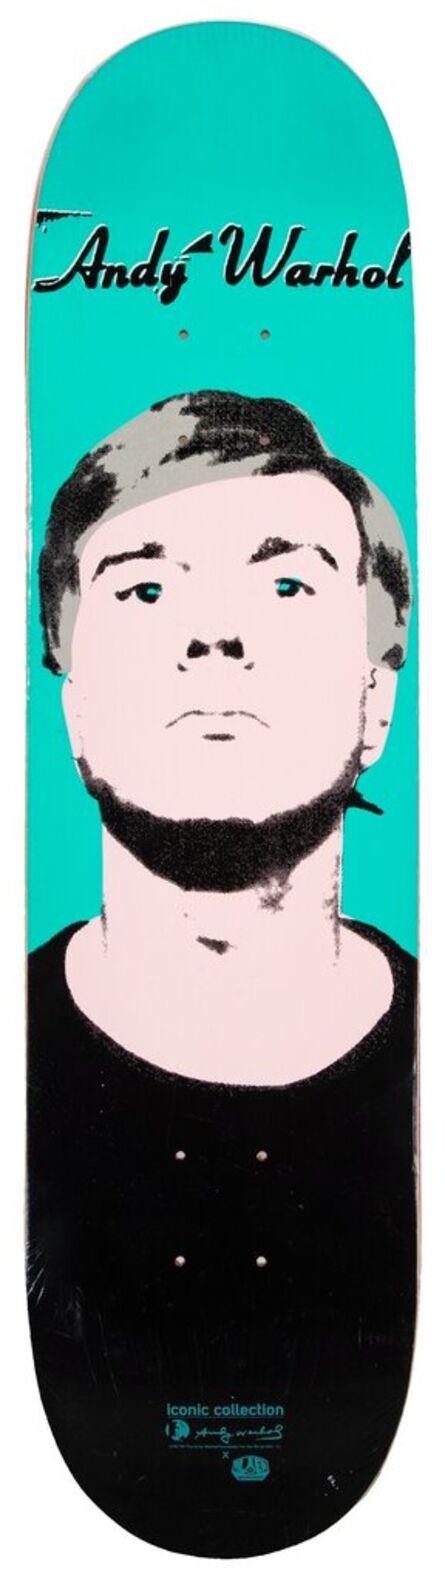 Andy Warhol, ‘Elvis’, 2011